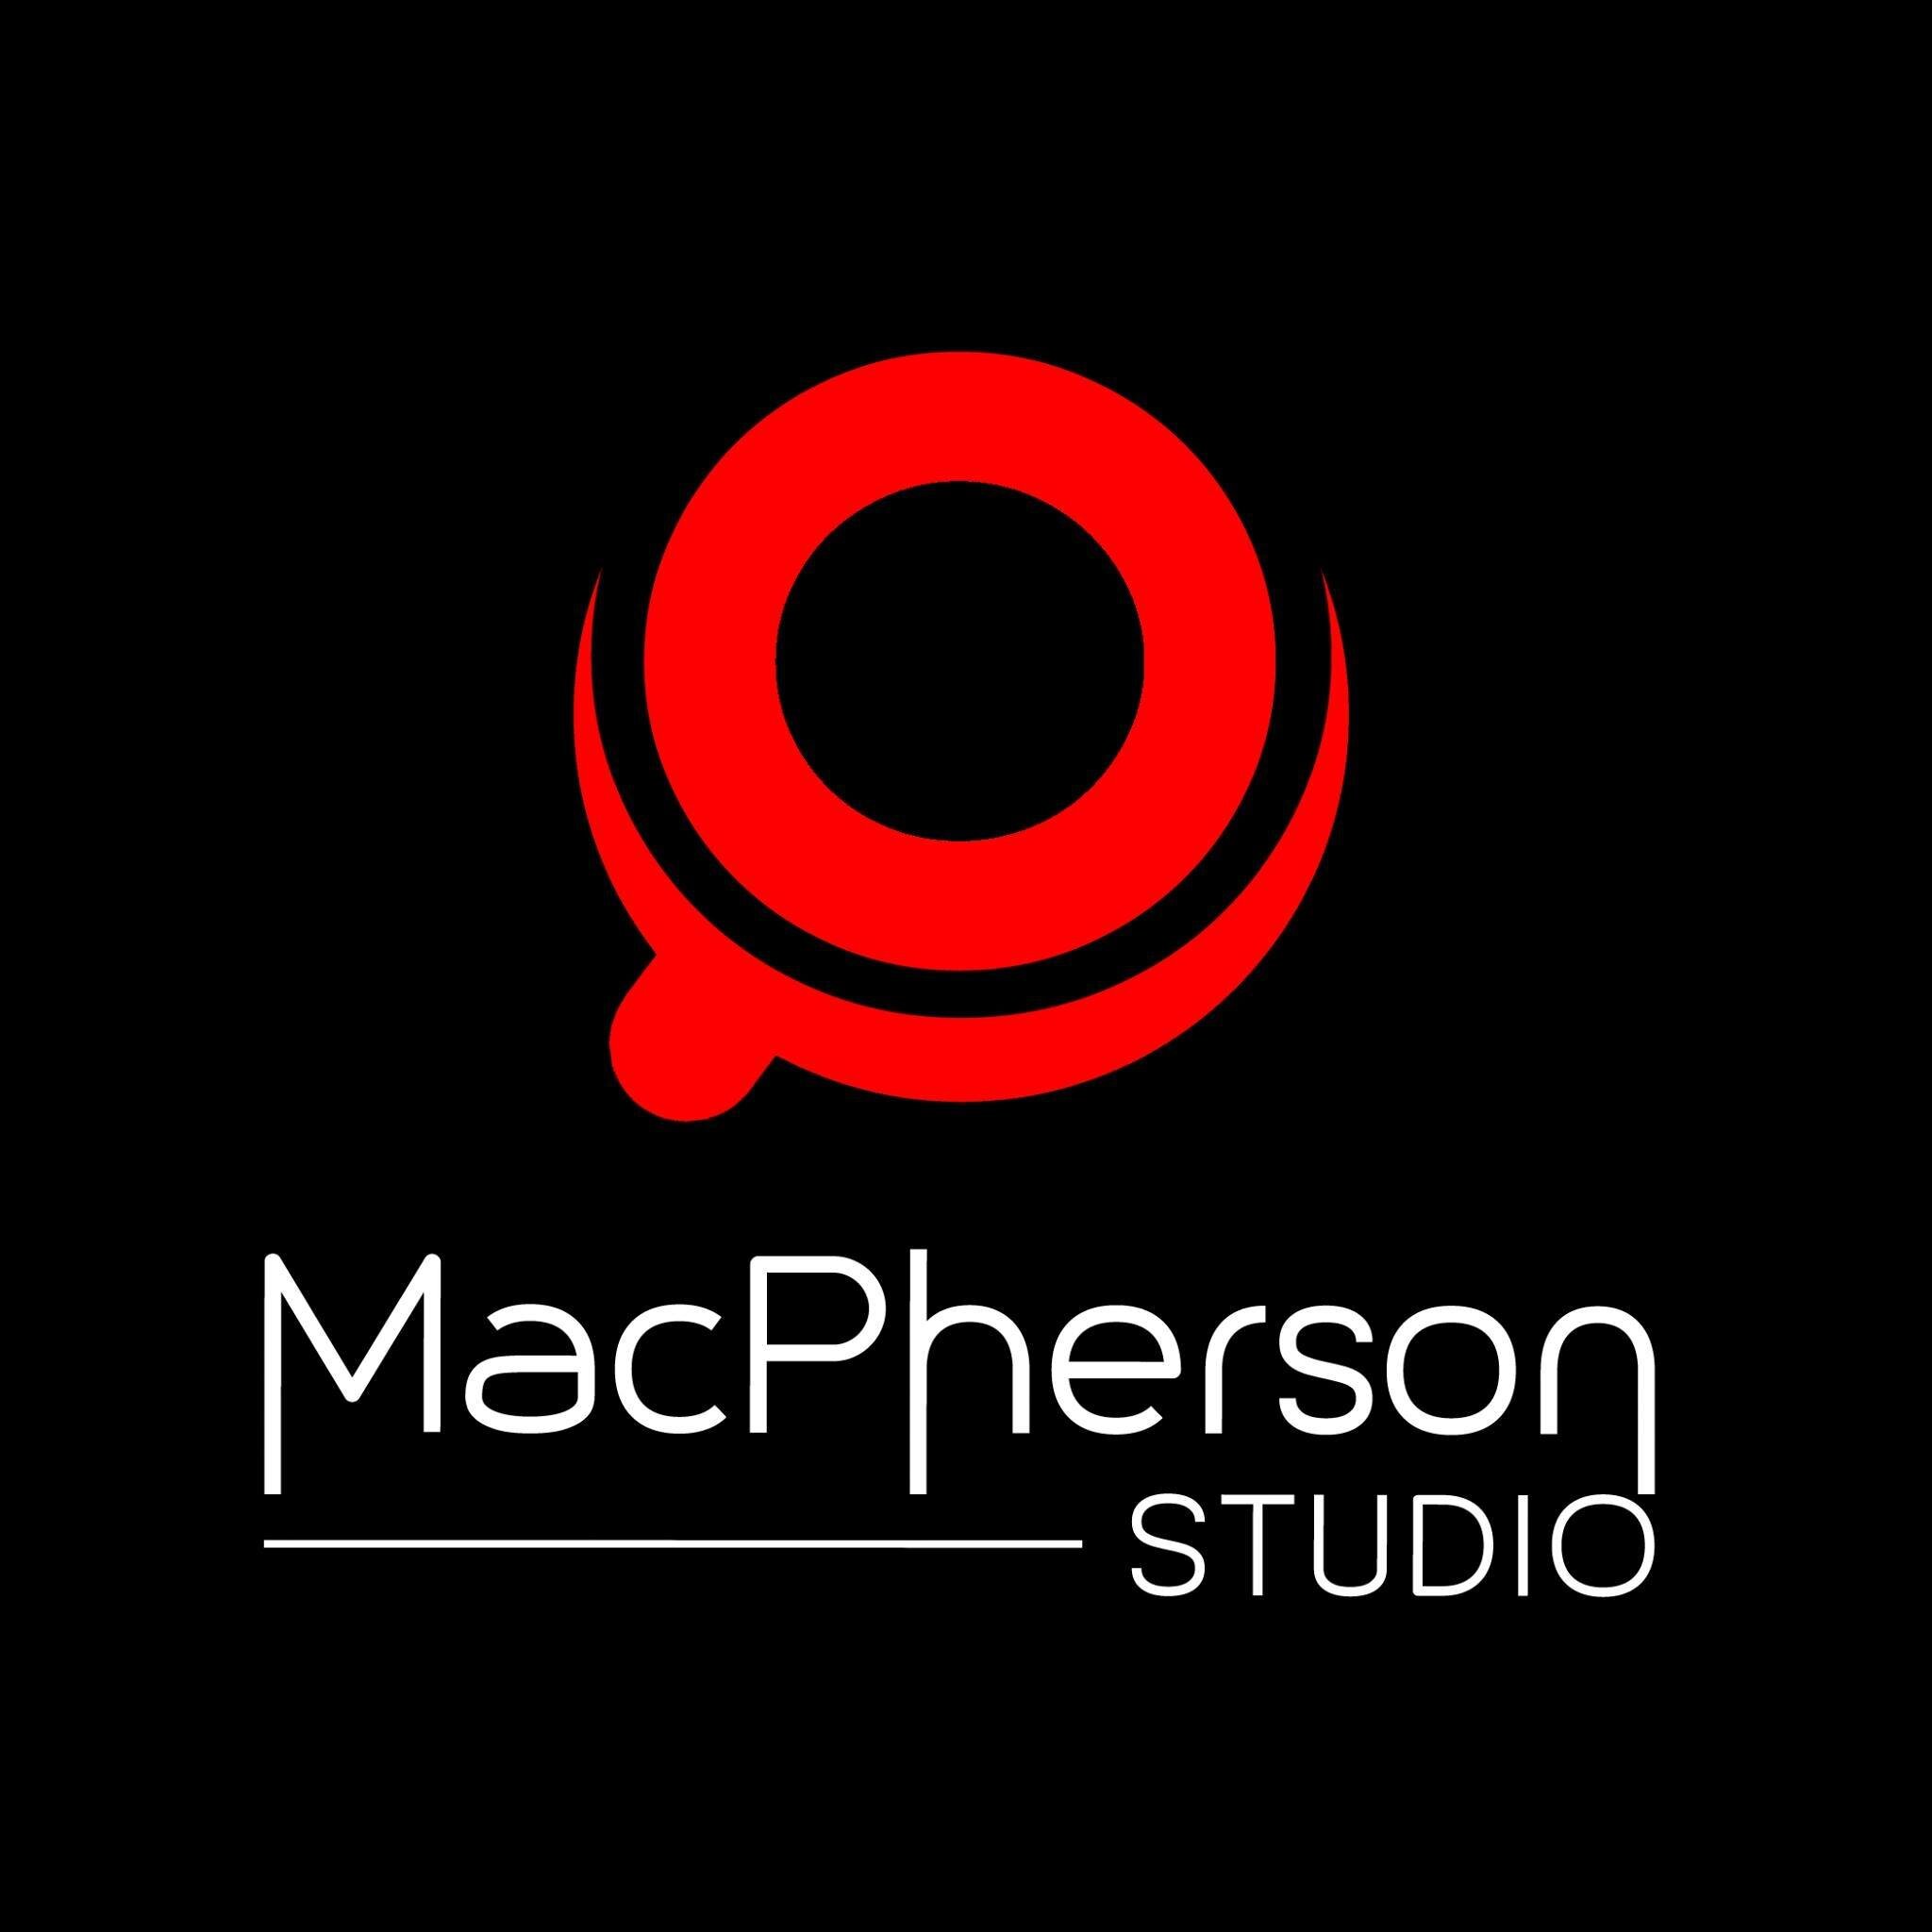 Macpherson Studio.jpg